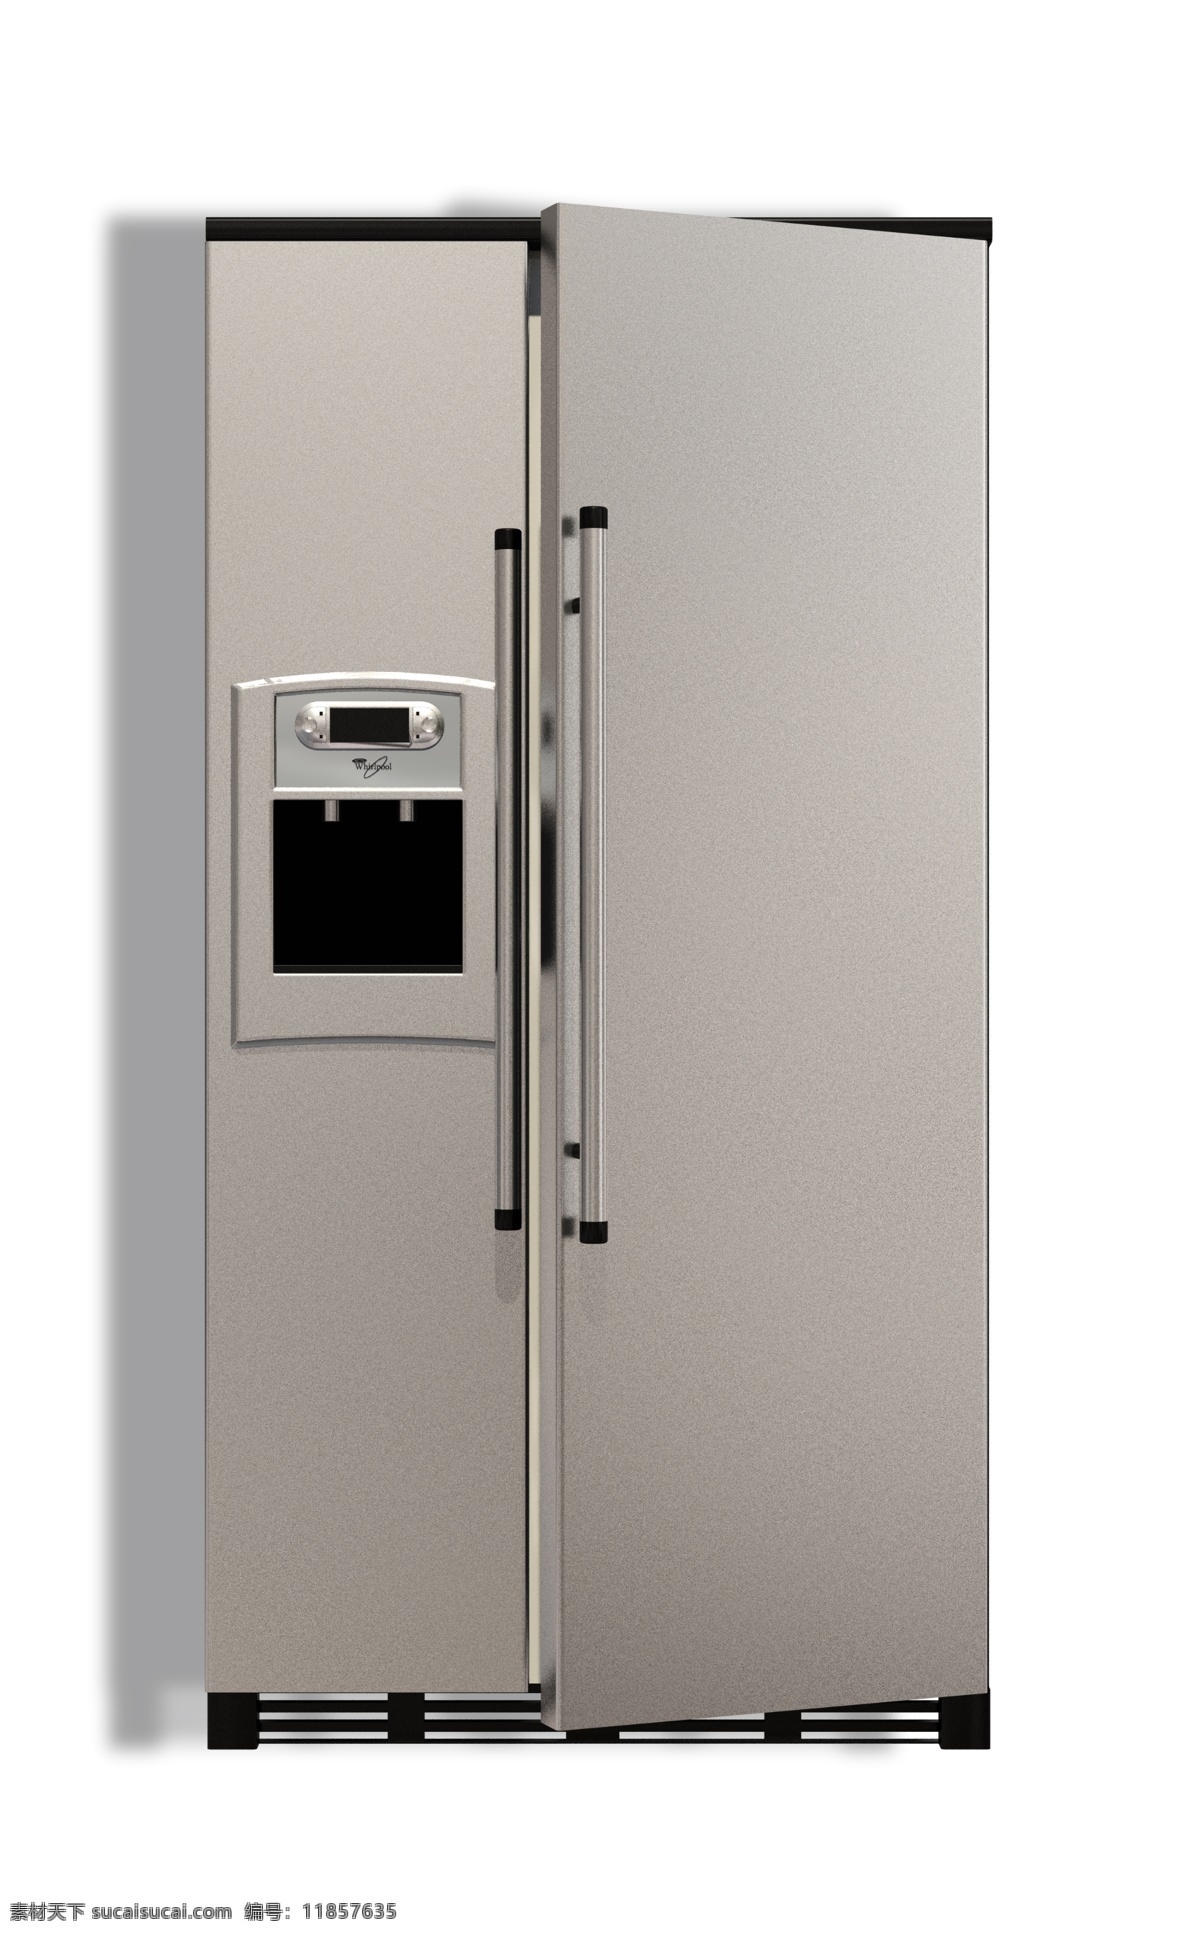 家用电器 双门 冰箱 三门冰箱 制冷 冷藏 食物保存 食物冷冻 新鲜保存 制冷节能冰箱 冰柜